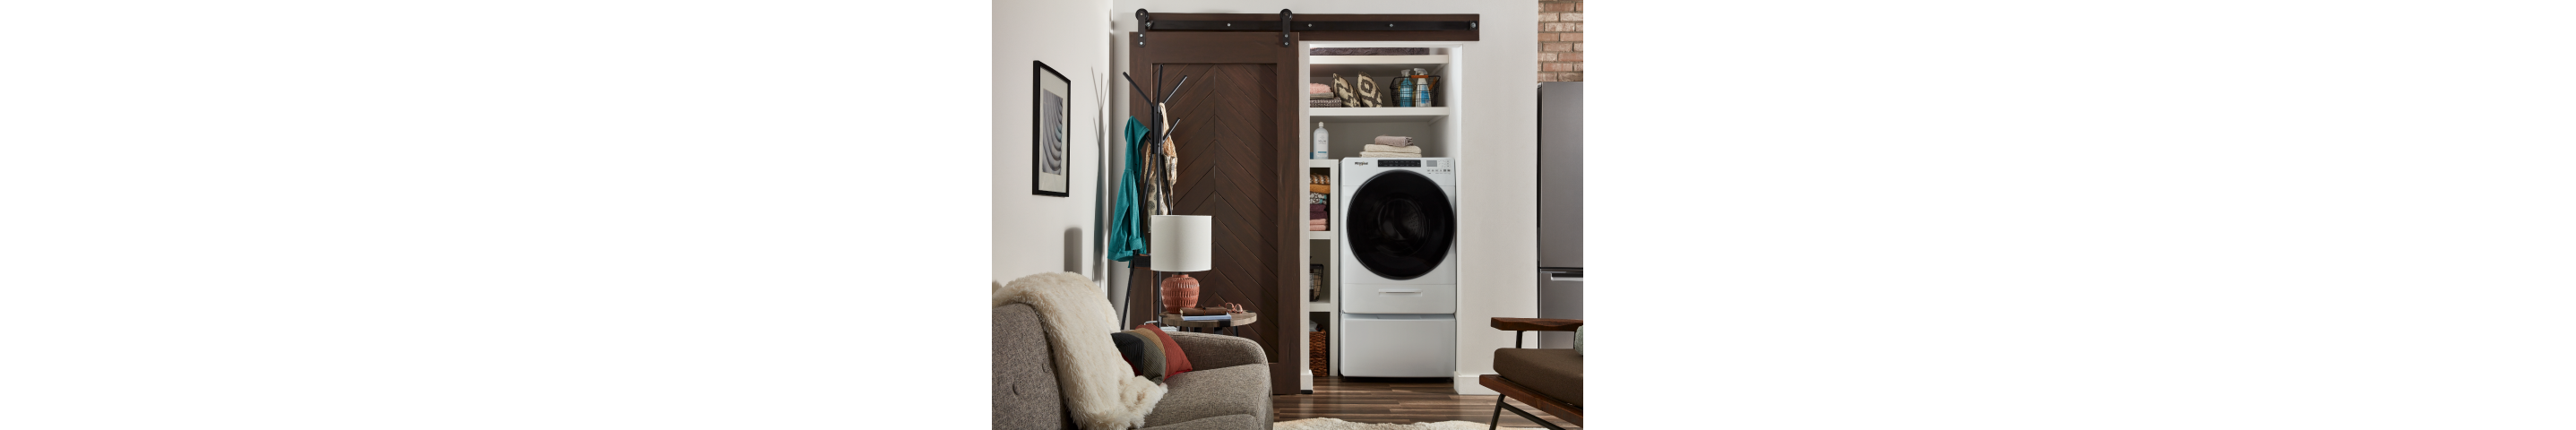 白色惠而浦®All-In-One洗衣机和烘干机内的衣柜与滑动谷仓门